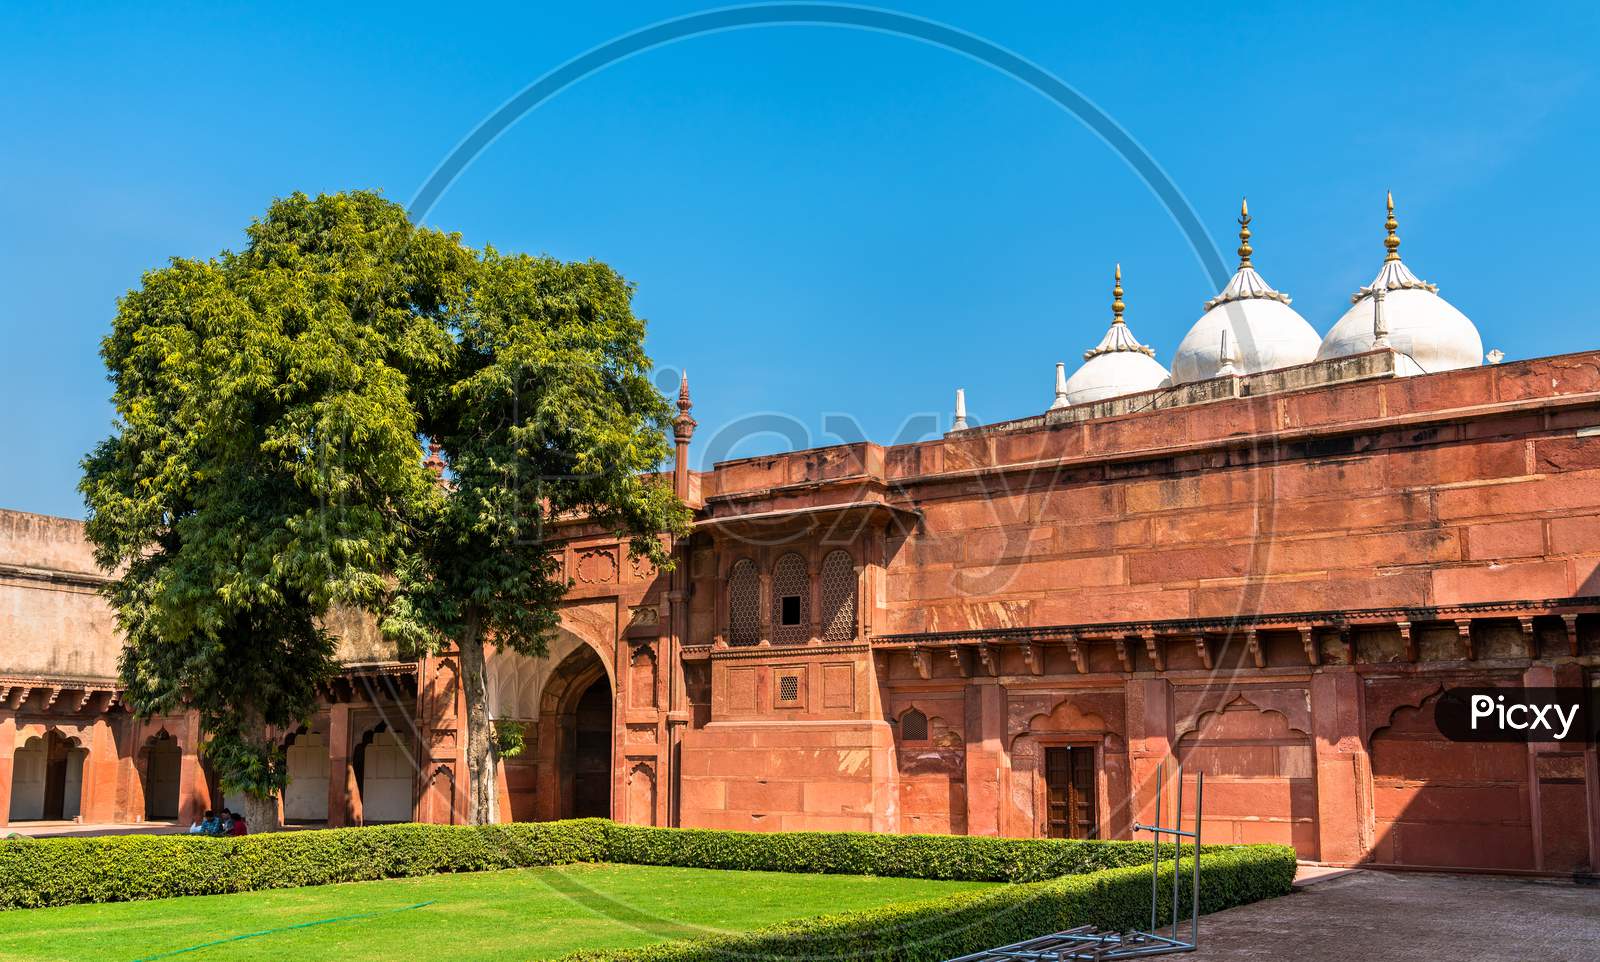 Defensive Walls Of Agra Fort. Unesco Heritage Site In India